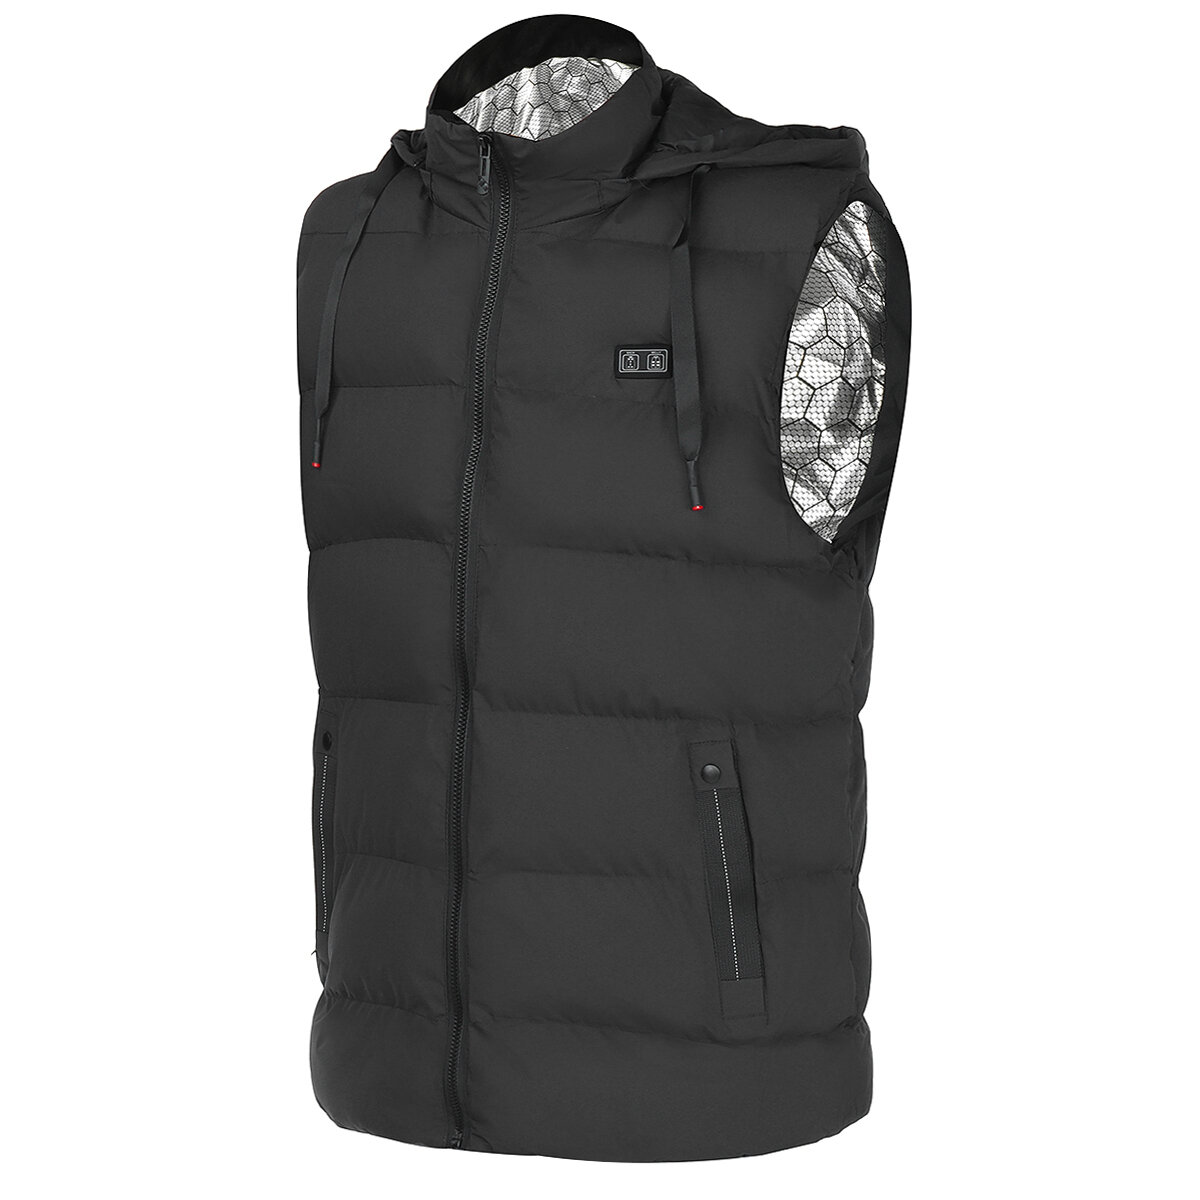 11 Heating Zones Vest Warm Winter Men Women Electric USB Jacket Heated...